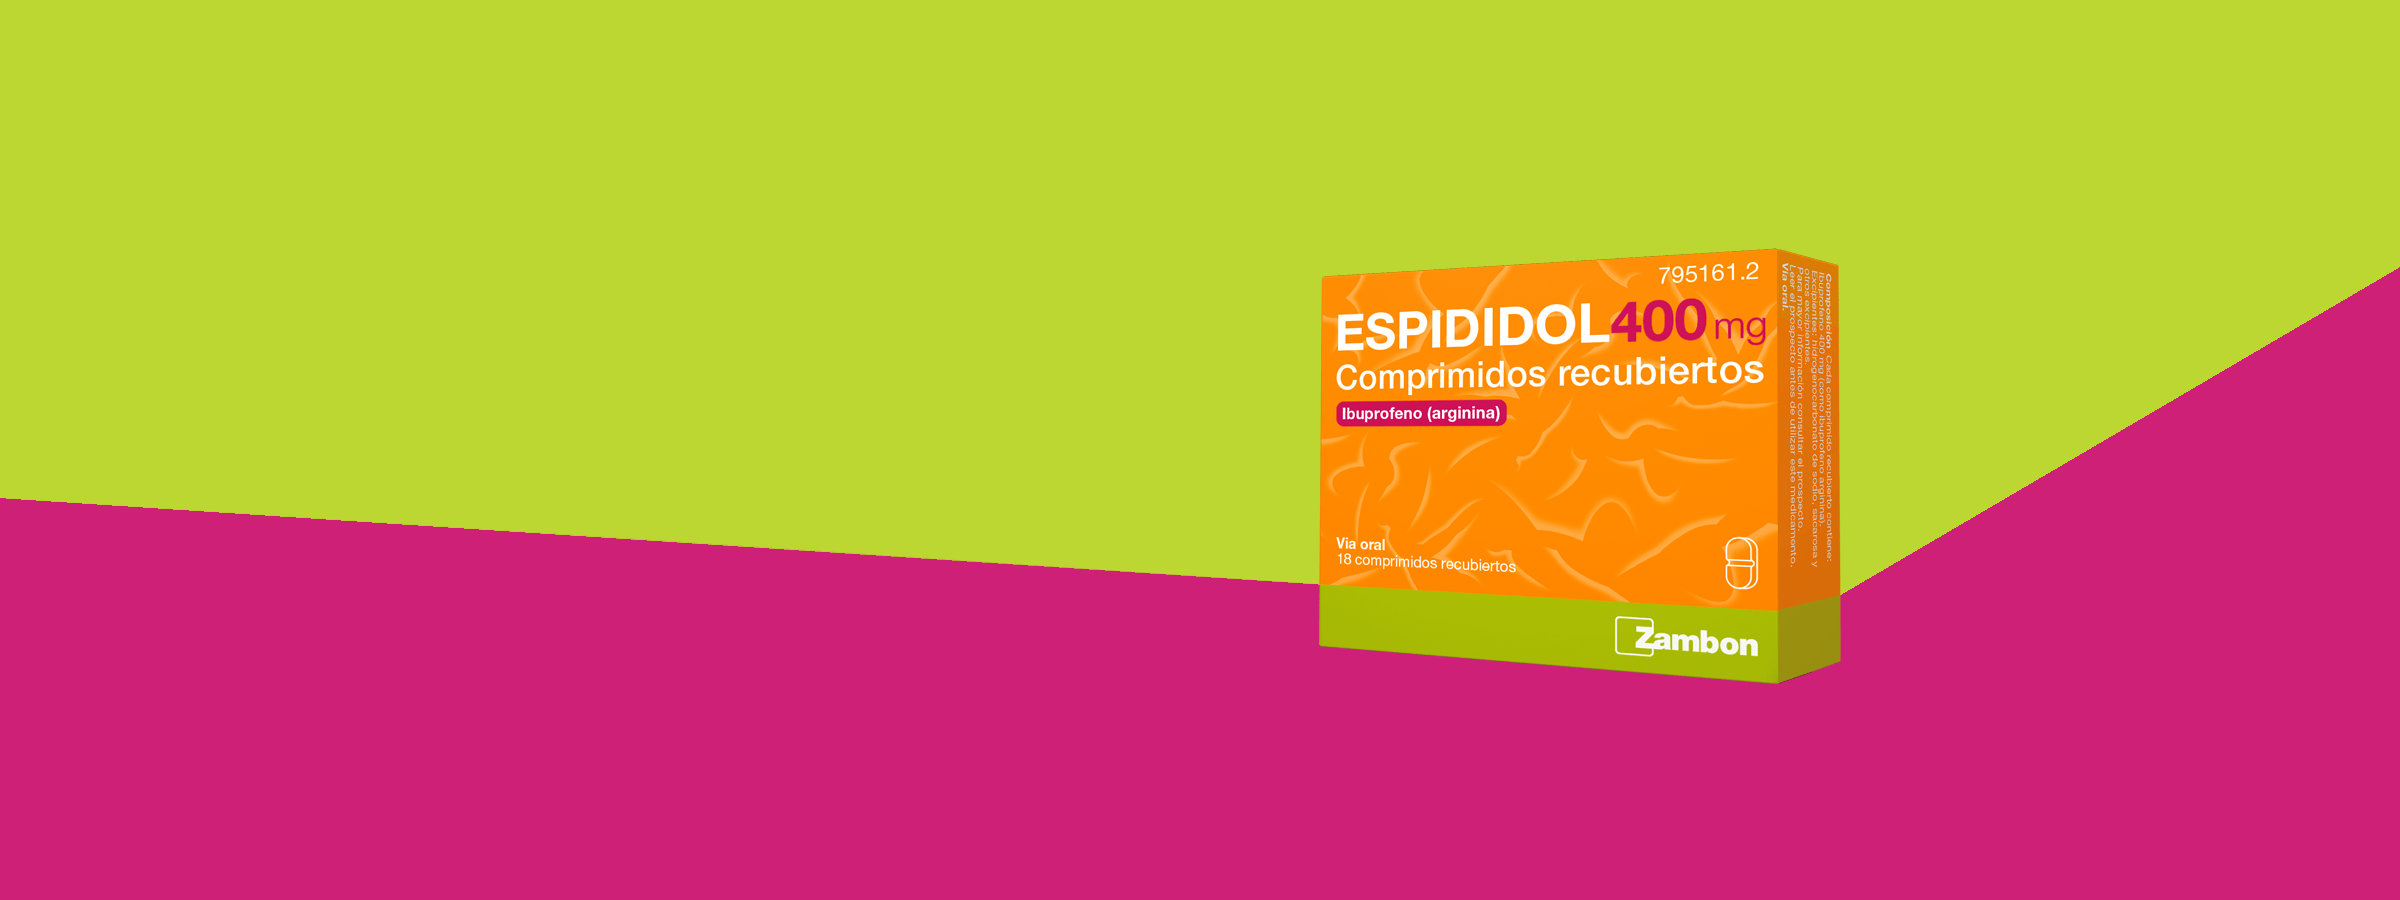 ¿Para qué se utiliza ESPIDIDOL? 